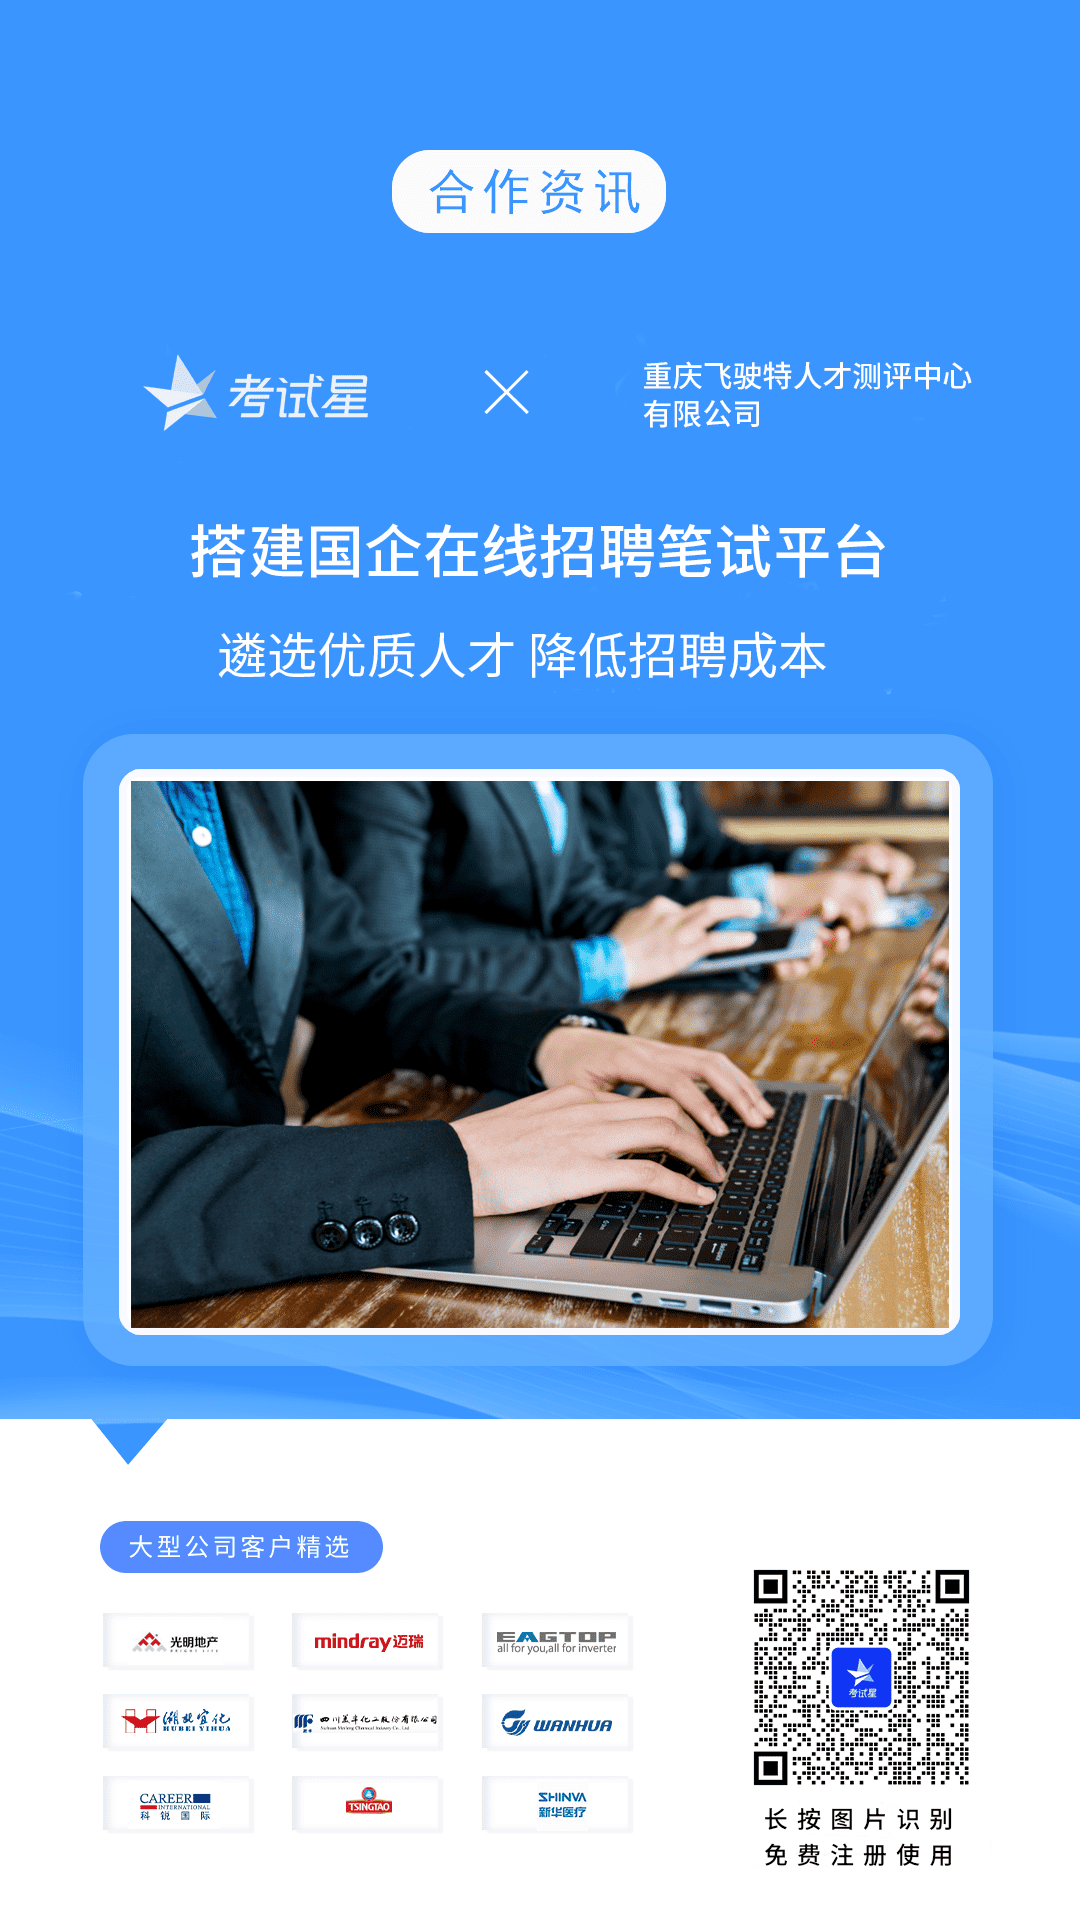 重庆飞驶特人才测评中心有限公司-考试星在线招聘笔试平台